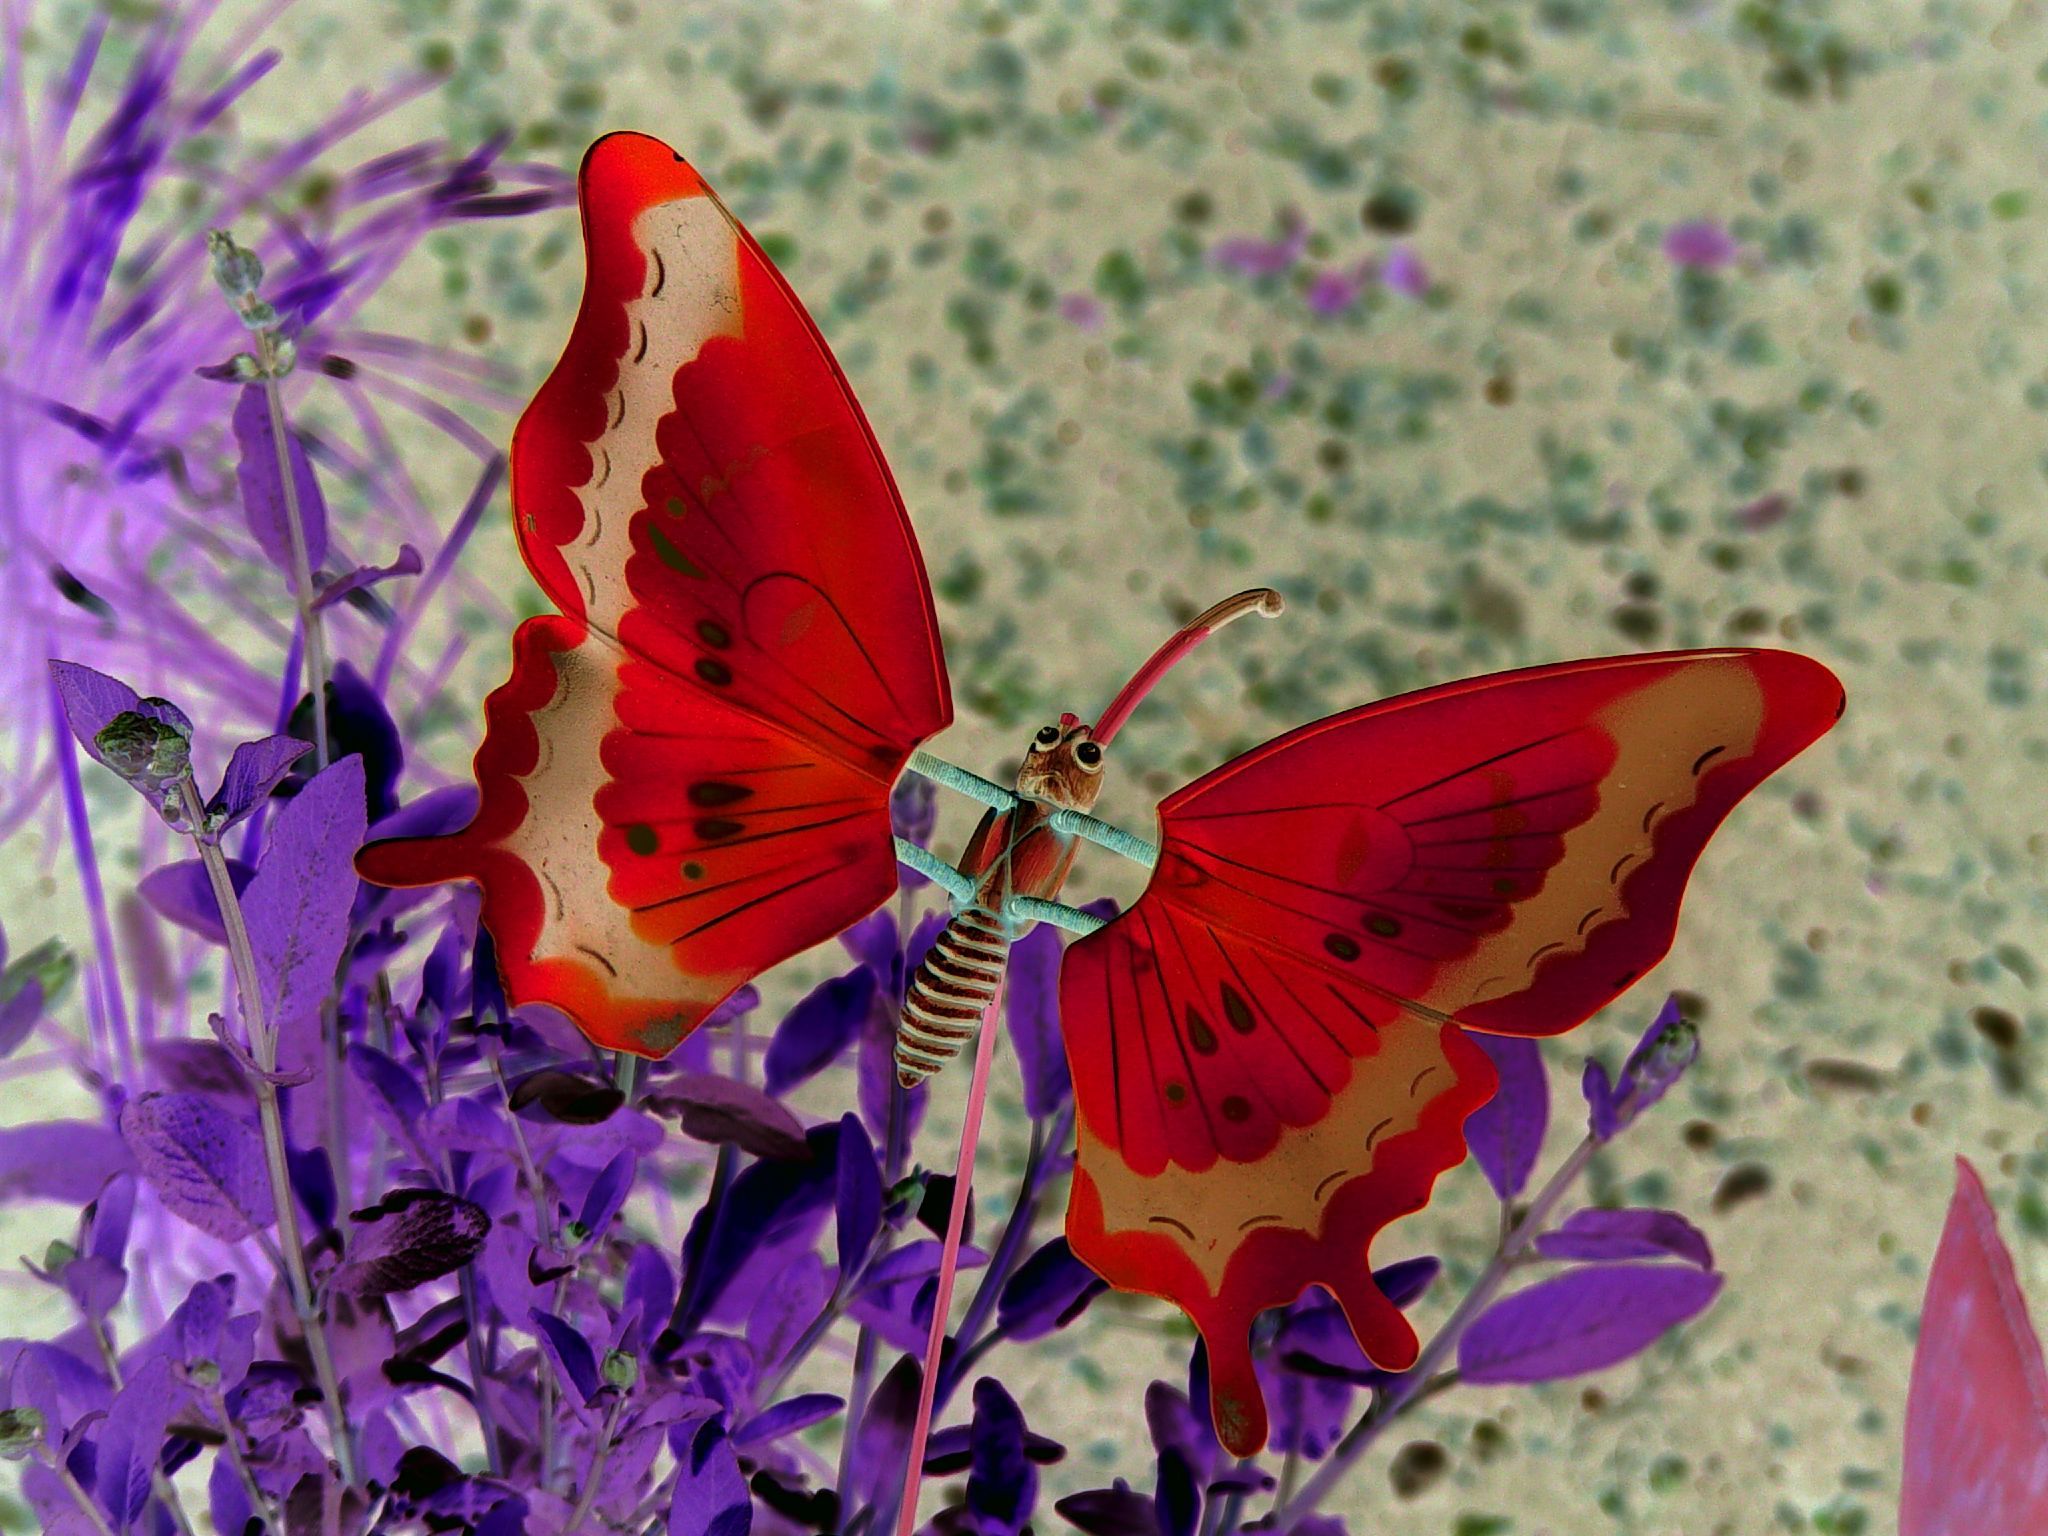 farfalla volante live wallpaper,la farfalla,cynthia subgenus,insetto,falene e farfalle,invertebrato